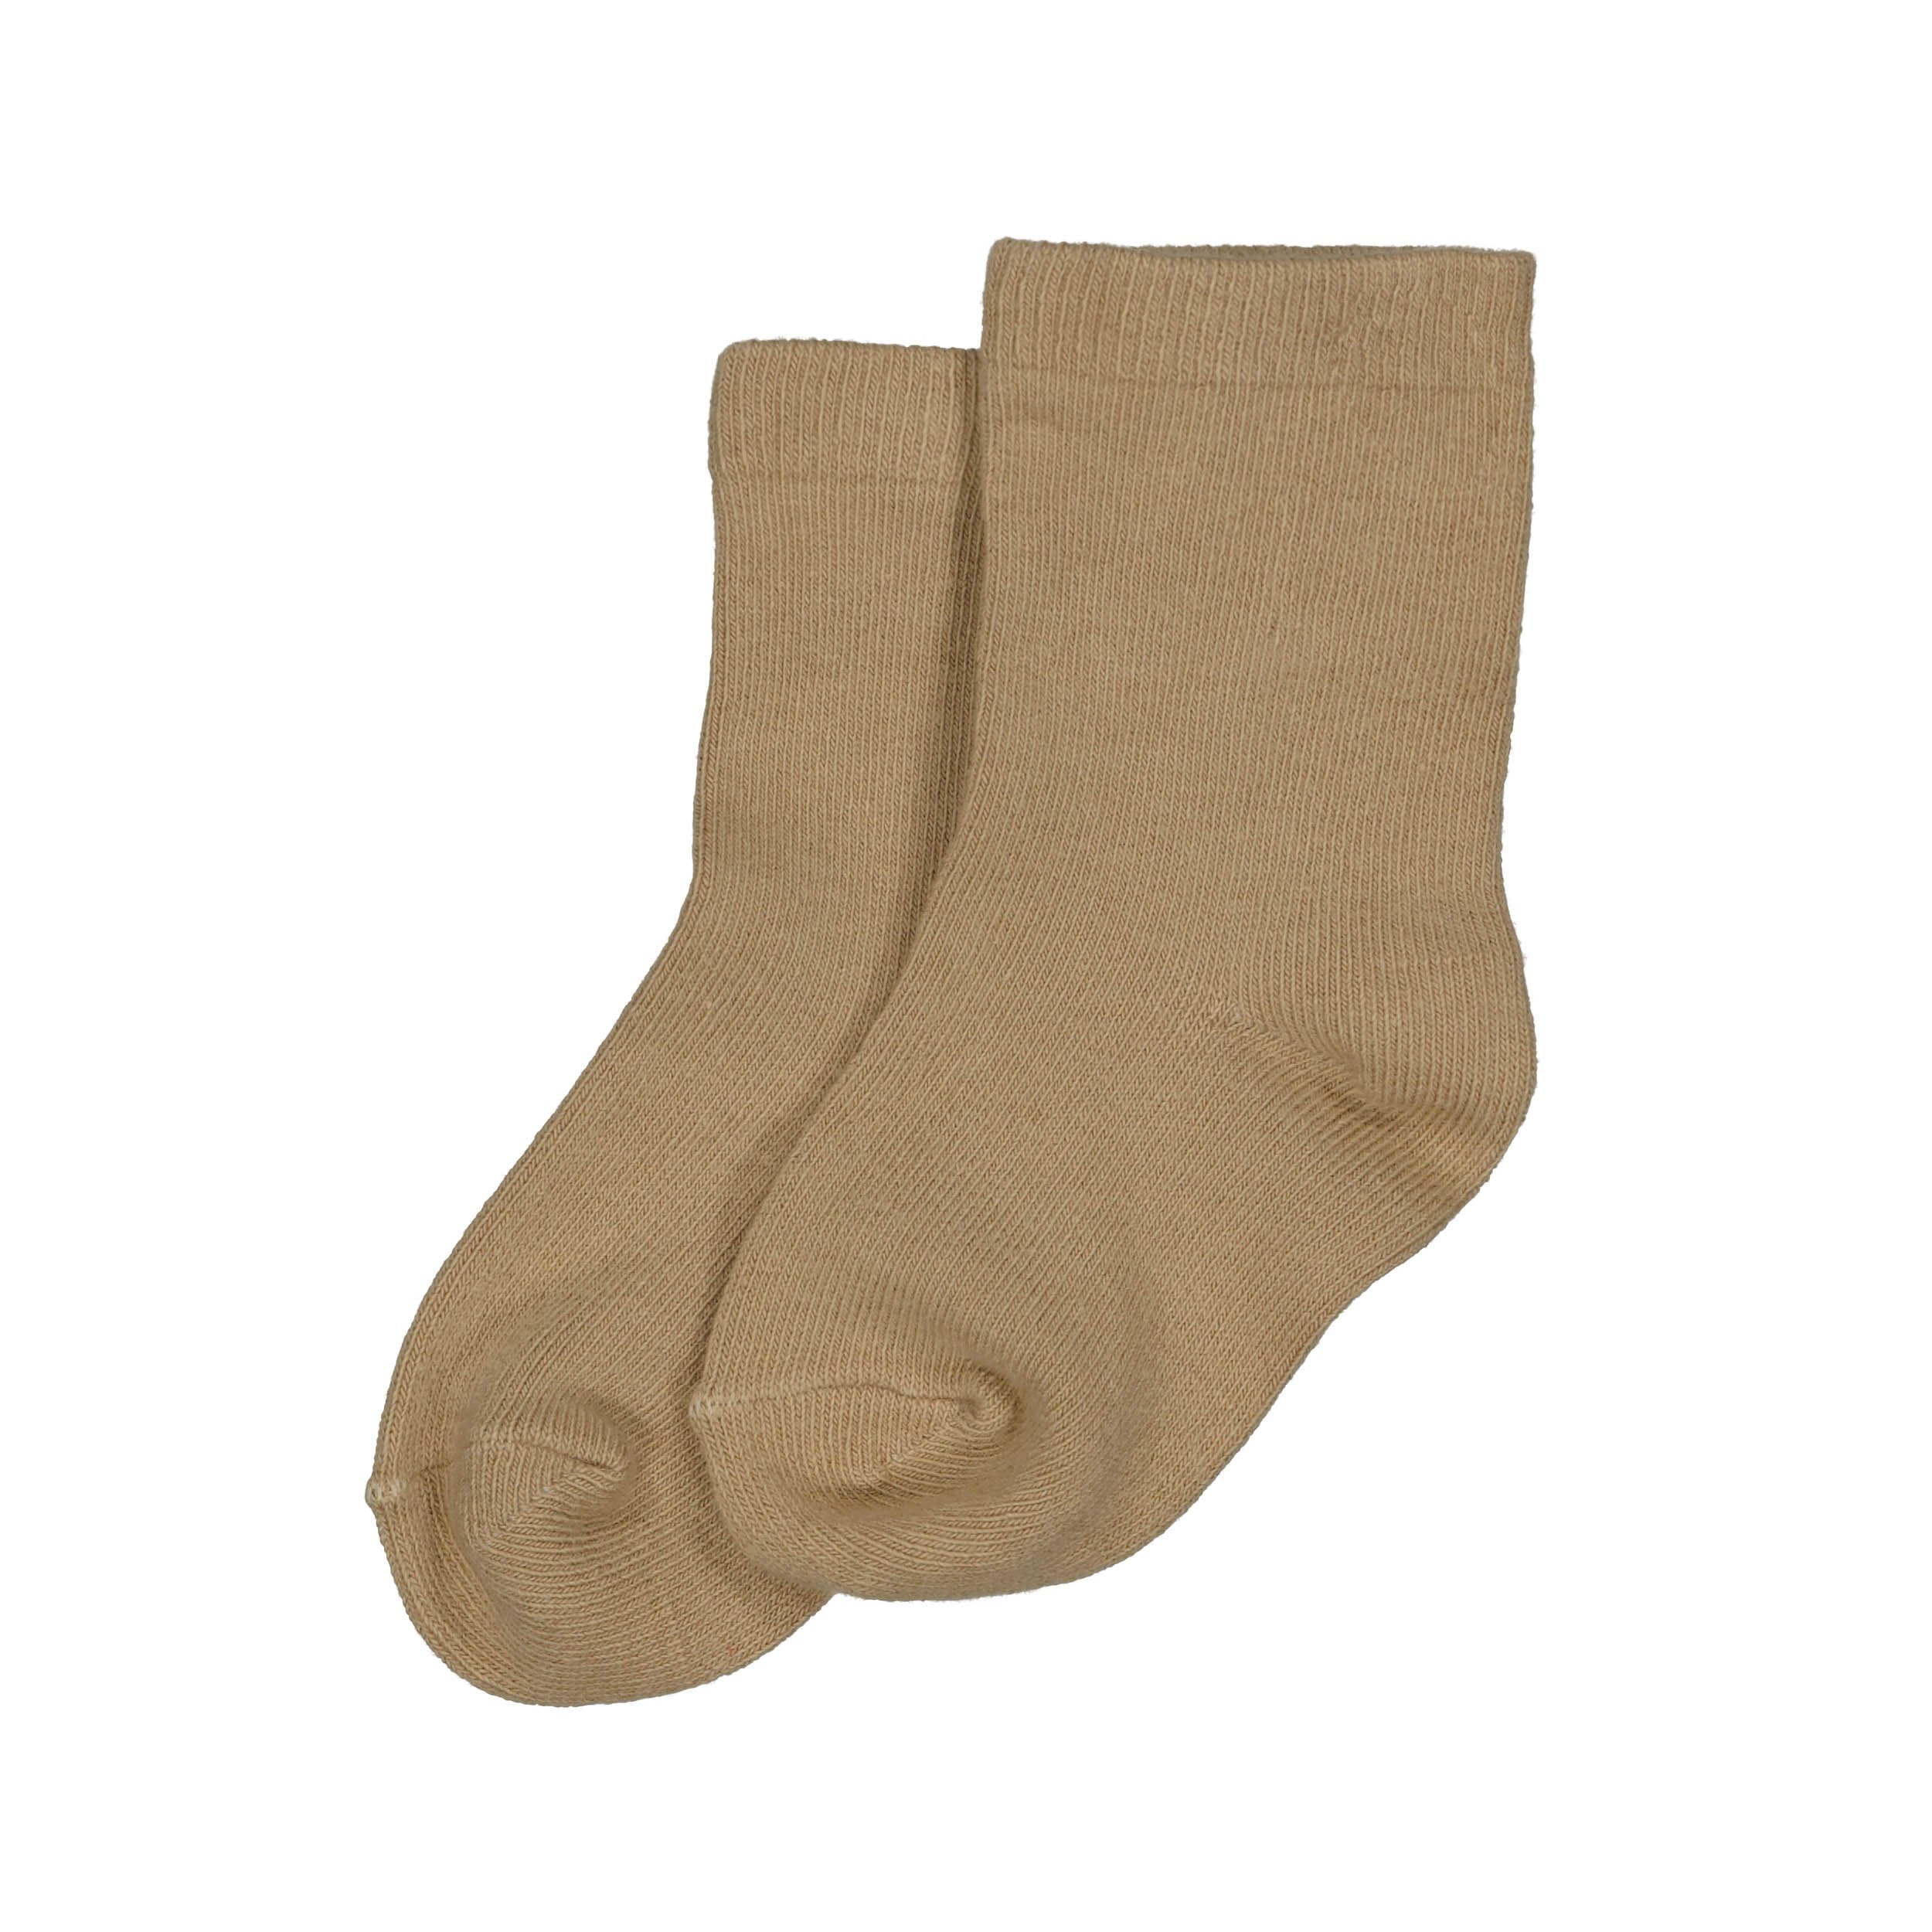 s Socks CYZA NBW21 van Levv Newborn in de kleur Sand Warm in maat One size.